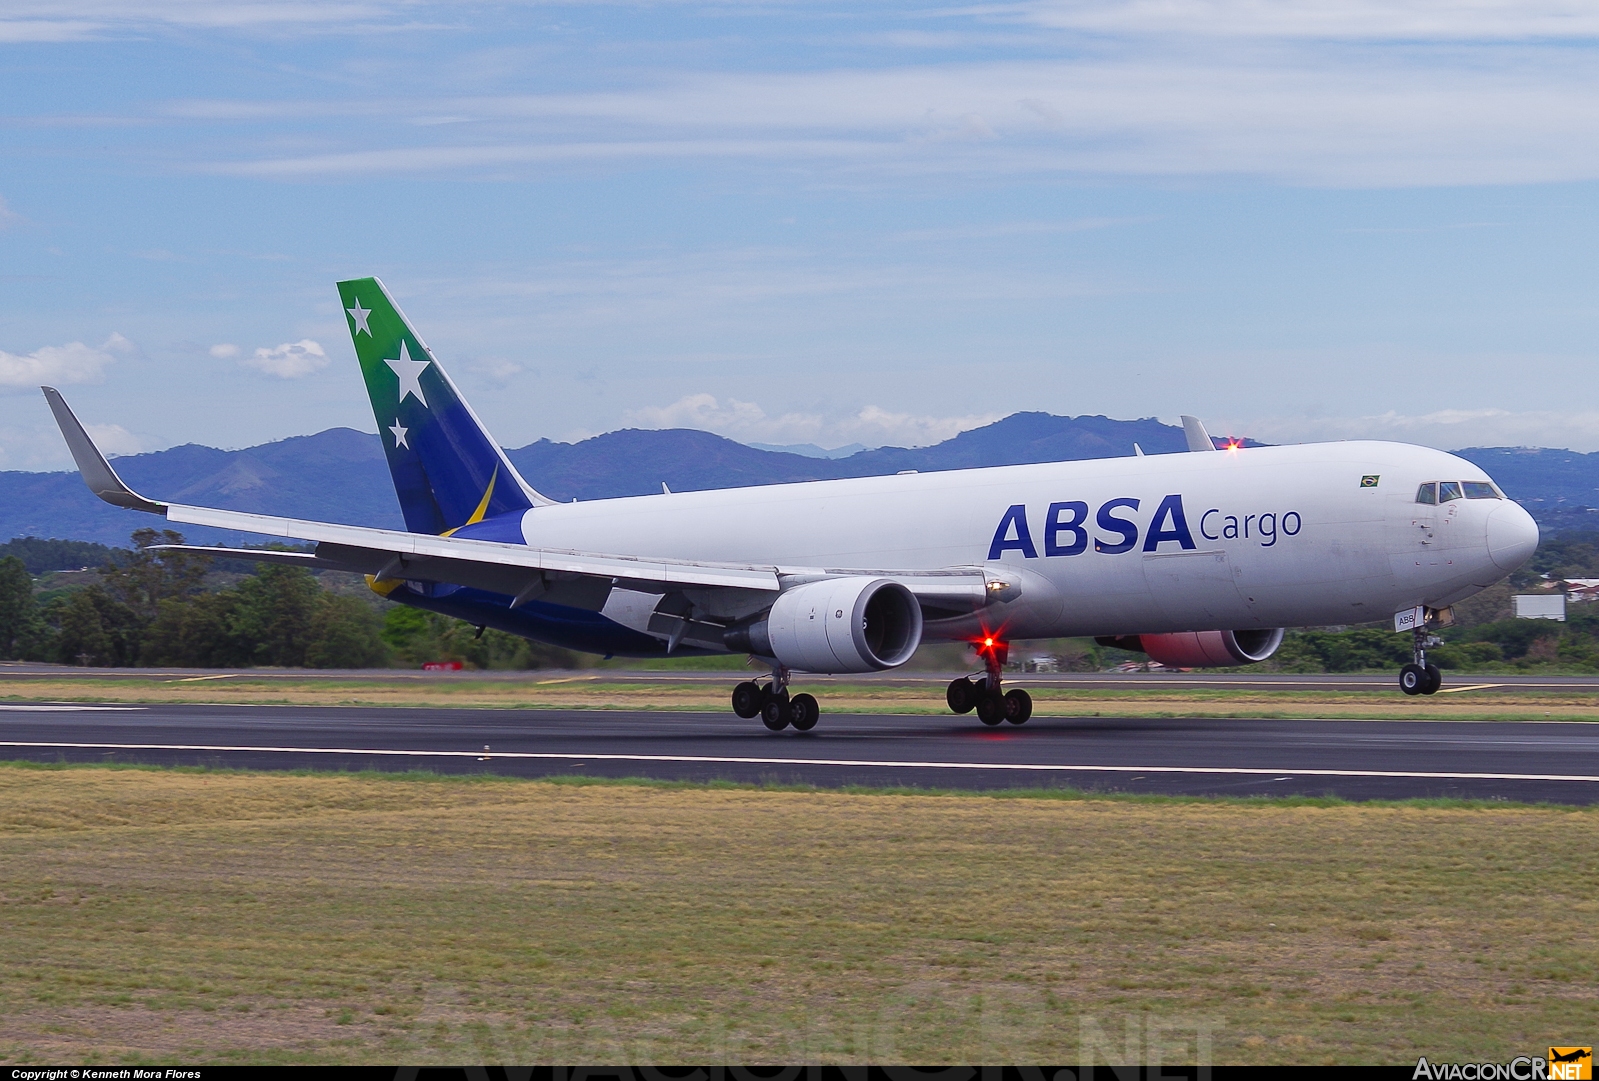 PR-ABB - Boeing 767-316F/ER - Absa Cargo